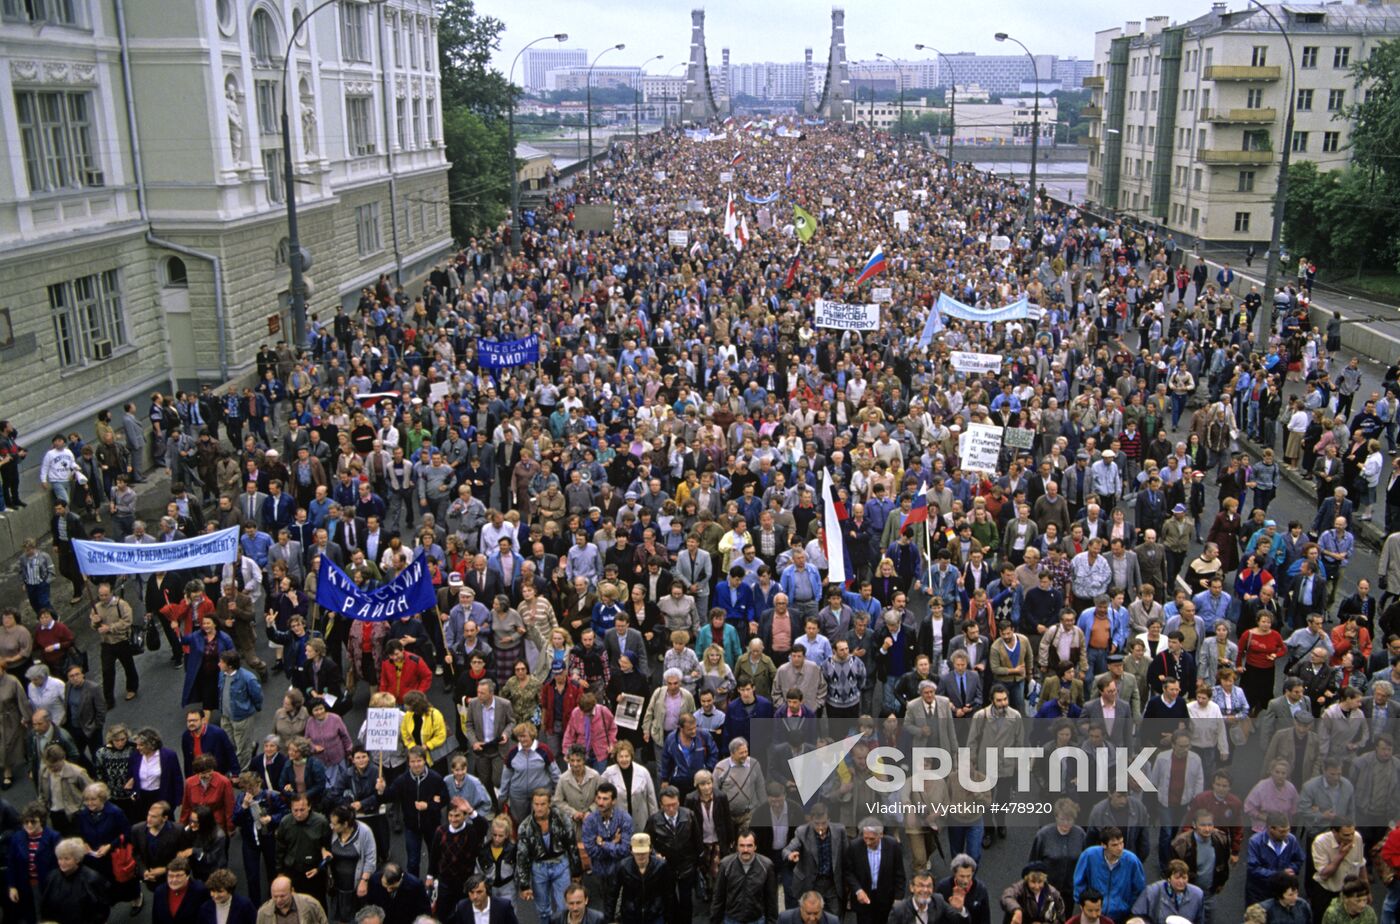 Demonstrators on the Krymsky Bridge